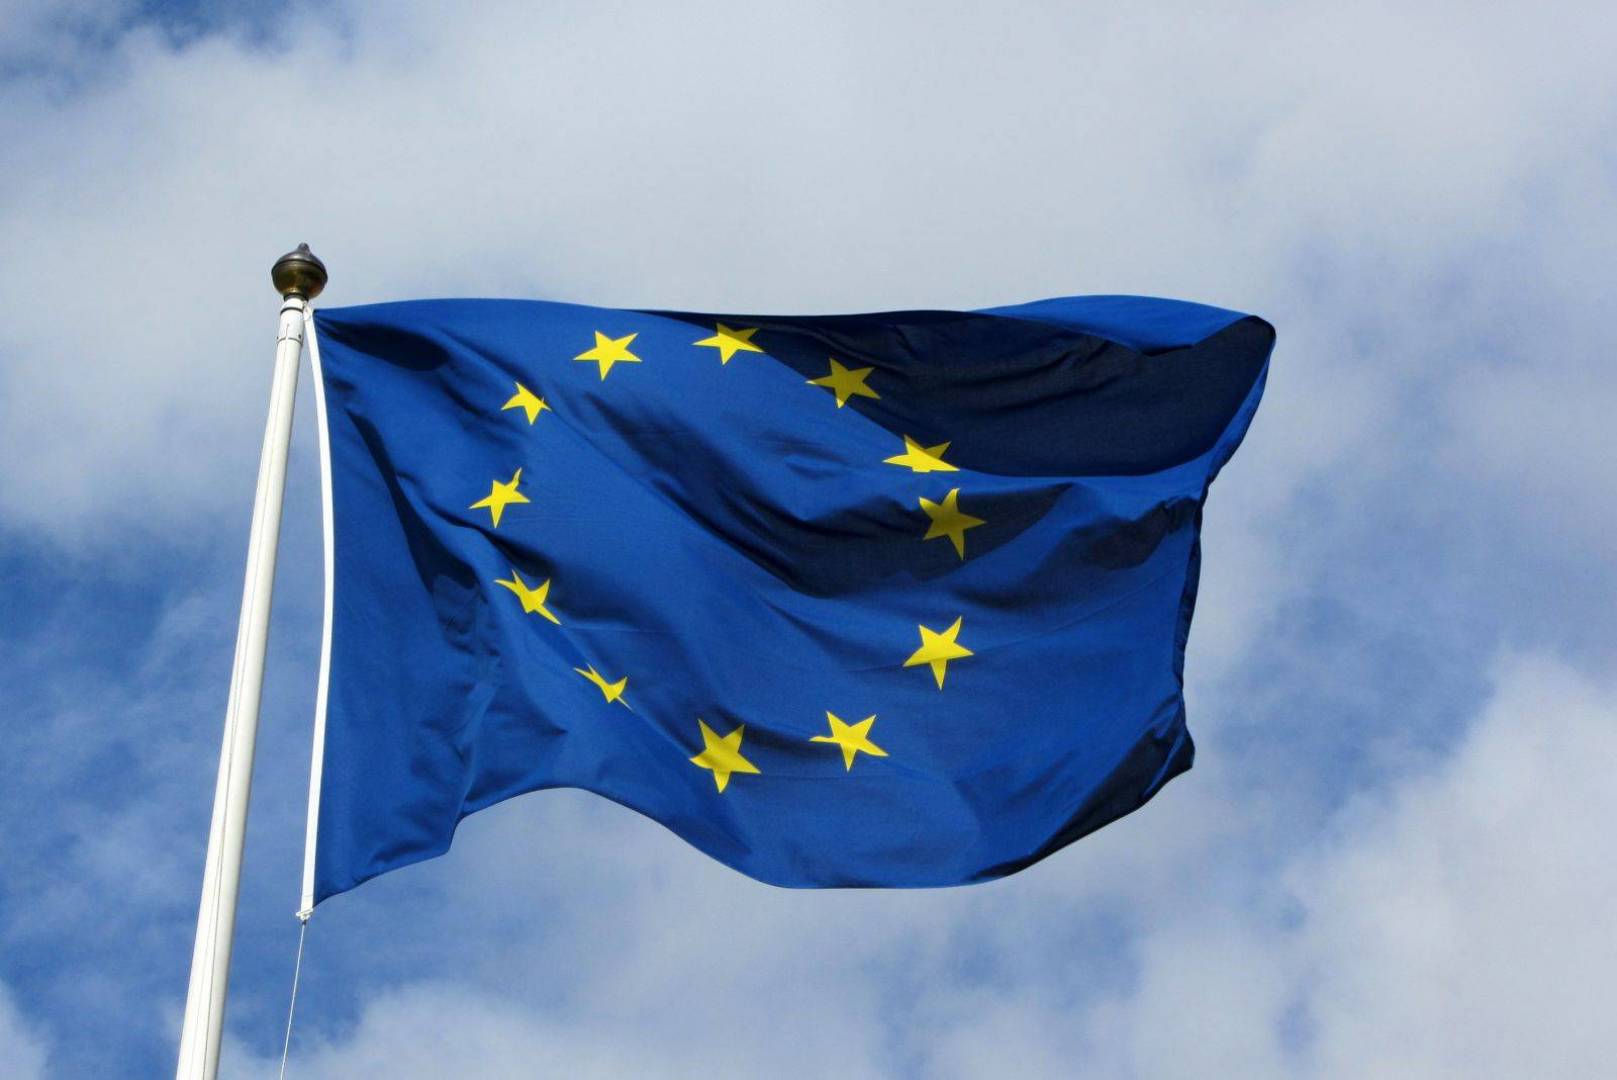   الاتحاد الأوروبي يتضامن مع بريطانيا بشأن «الجاسوس الروسي المسموم»